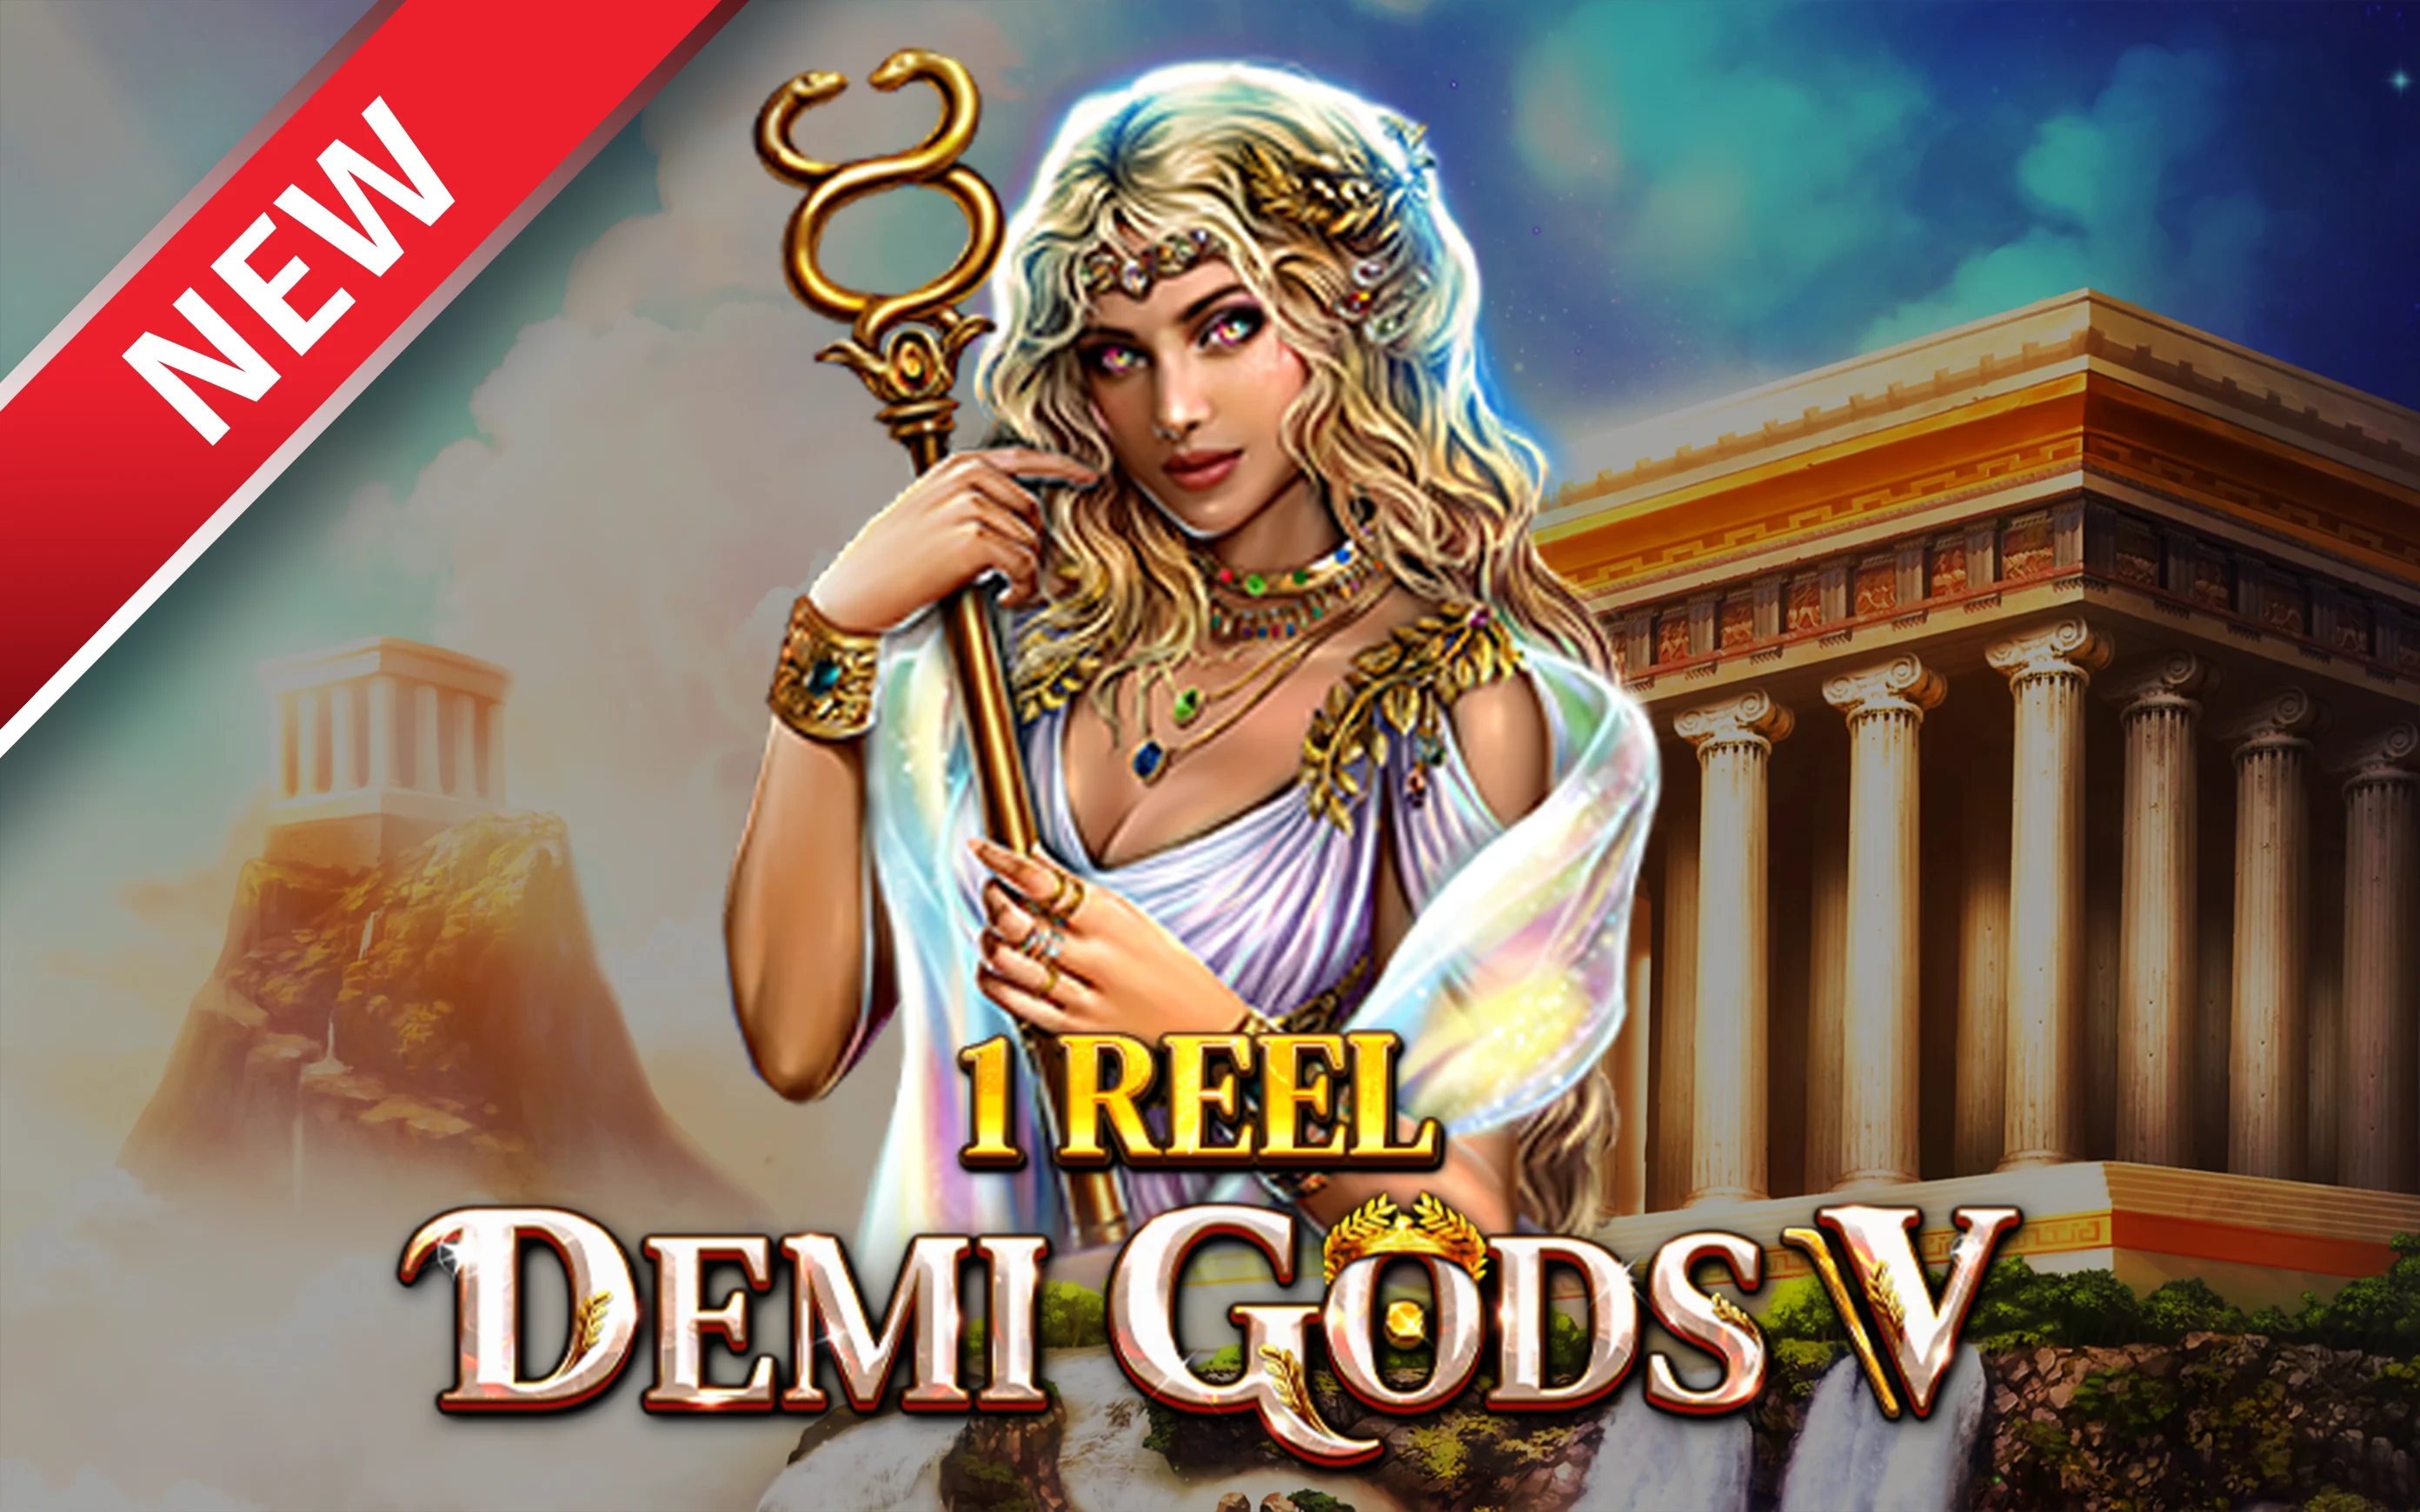 Играйте в 1 Reel – Demi Gods V в онлайн-казино Starcasino.be